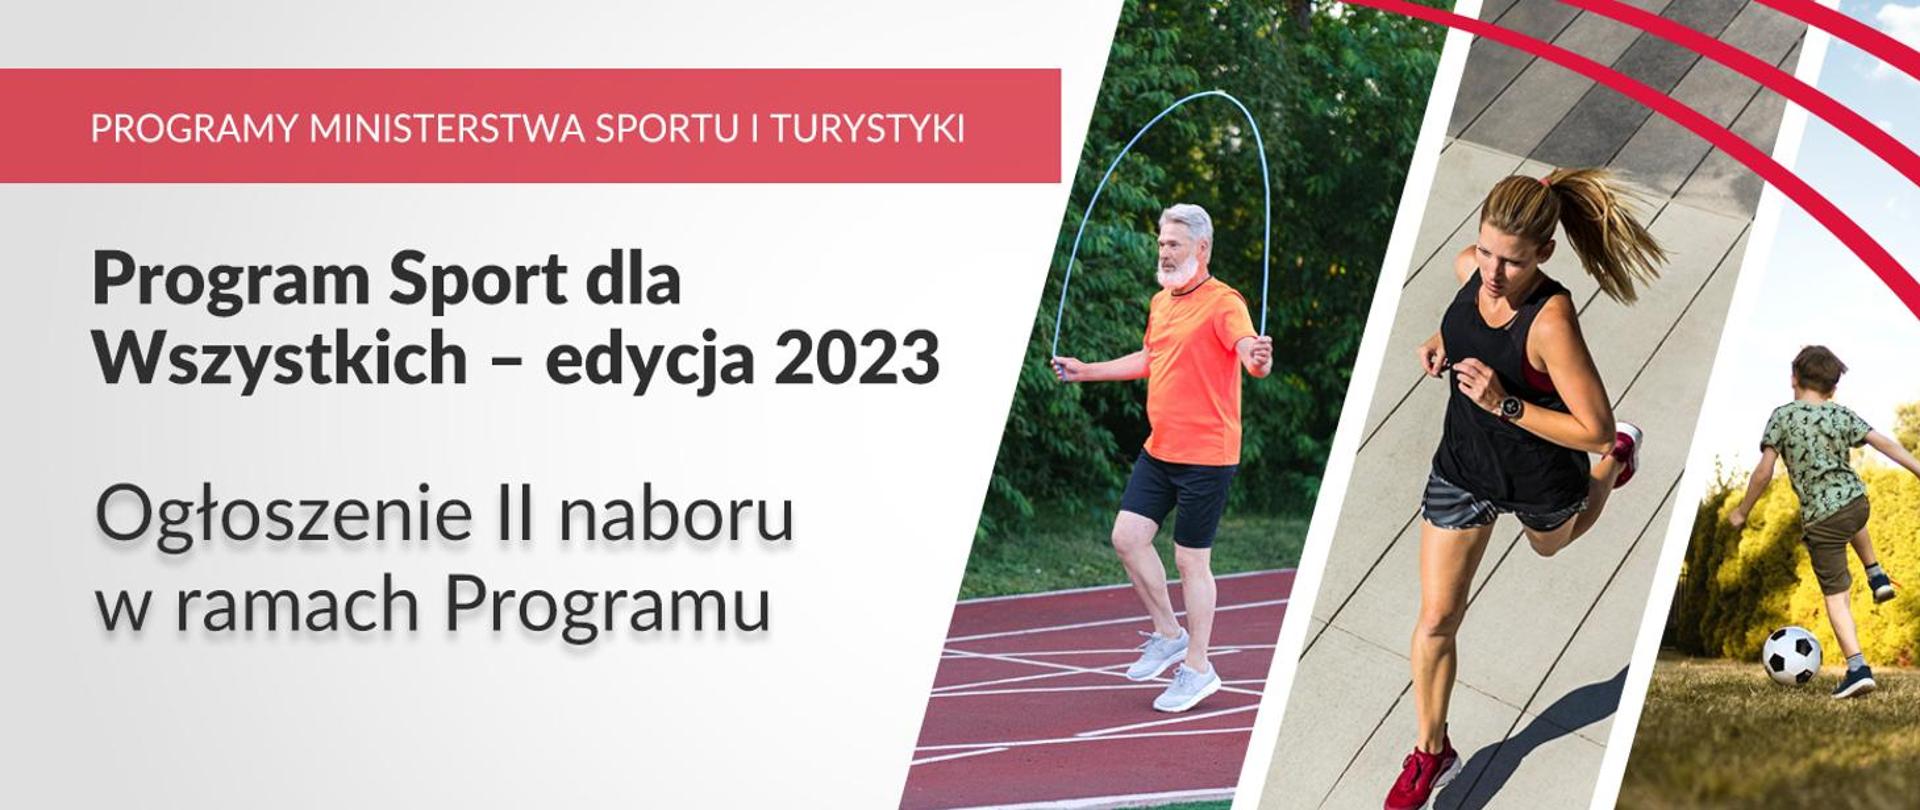 Rozpoczął się drugi nabór do Programu Sport dla Wszystkich, którego całkowity budżet w roku 2023 wynosi rekordowe 100 mln zł